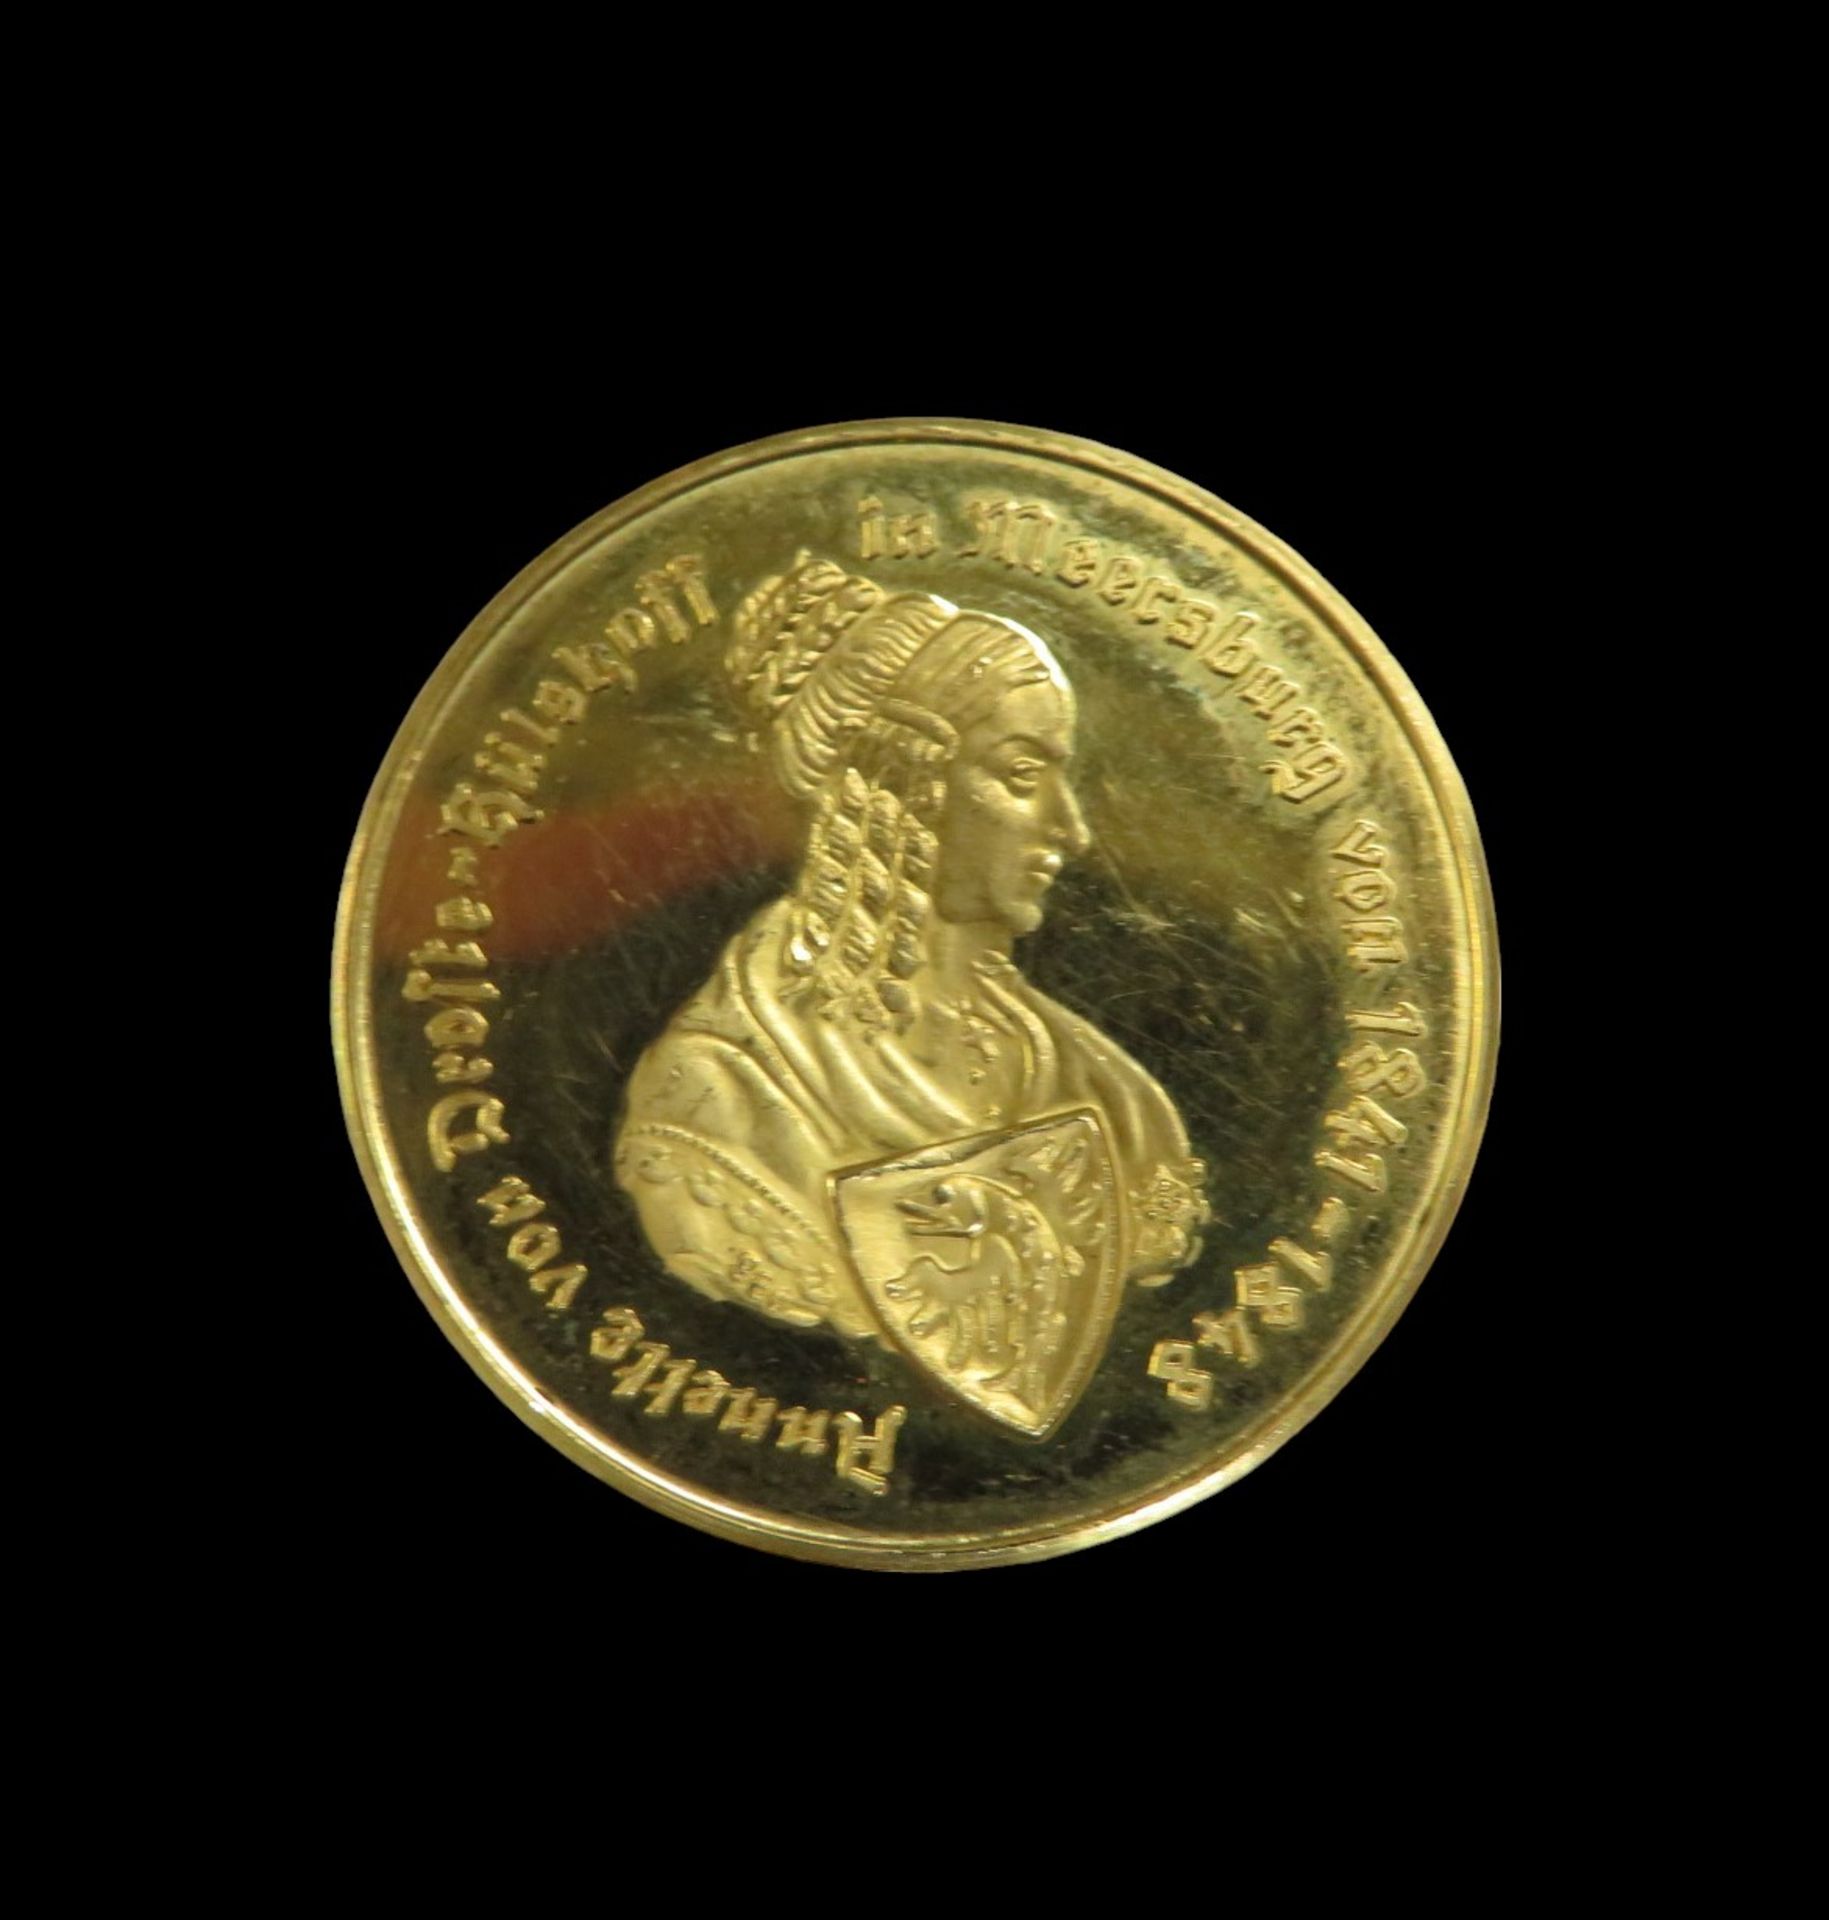 Goldmedaille, Annette von Droste-Hülshoff, Meersburg, Gold 986/000, 8,7 g, d 2,5 cm.